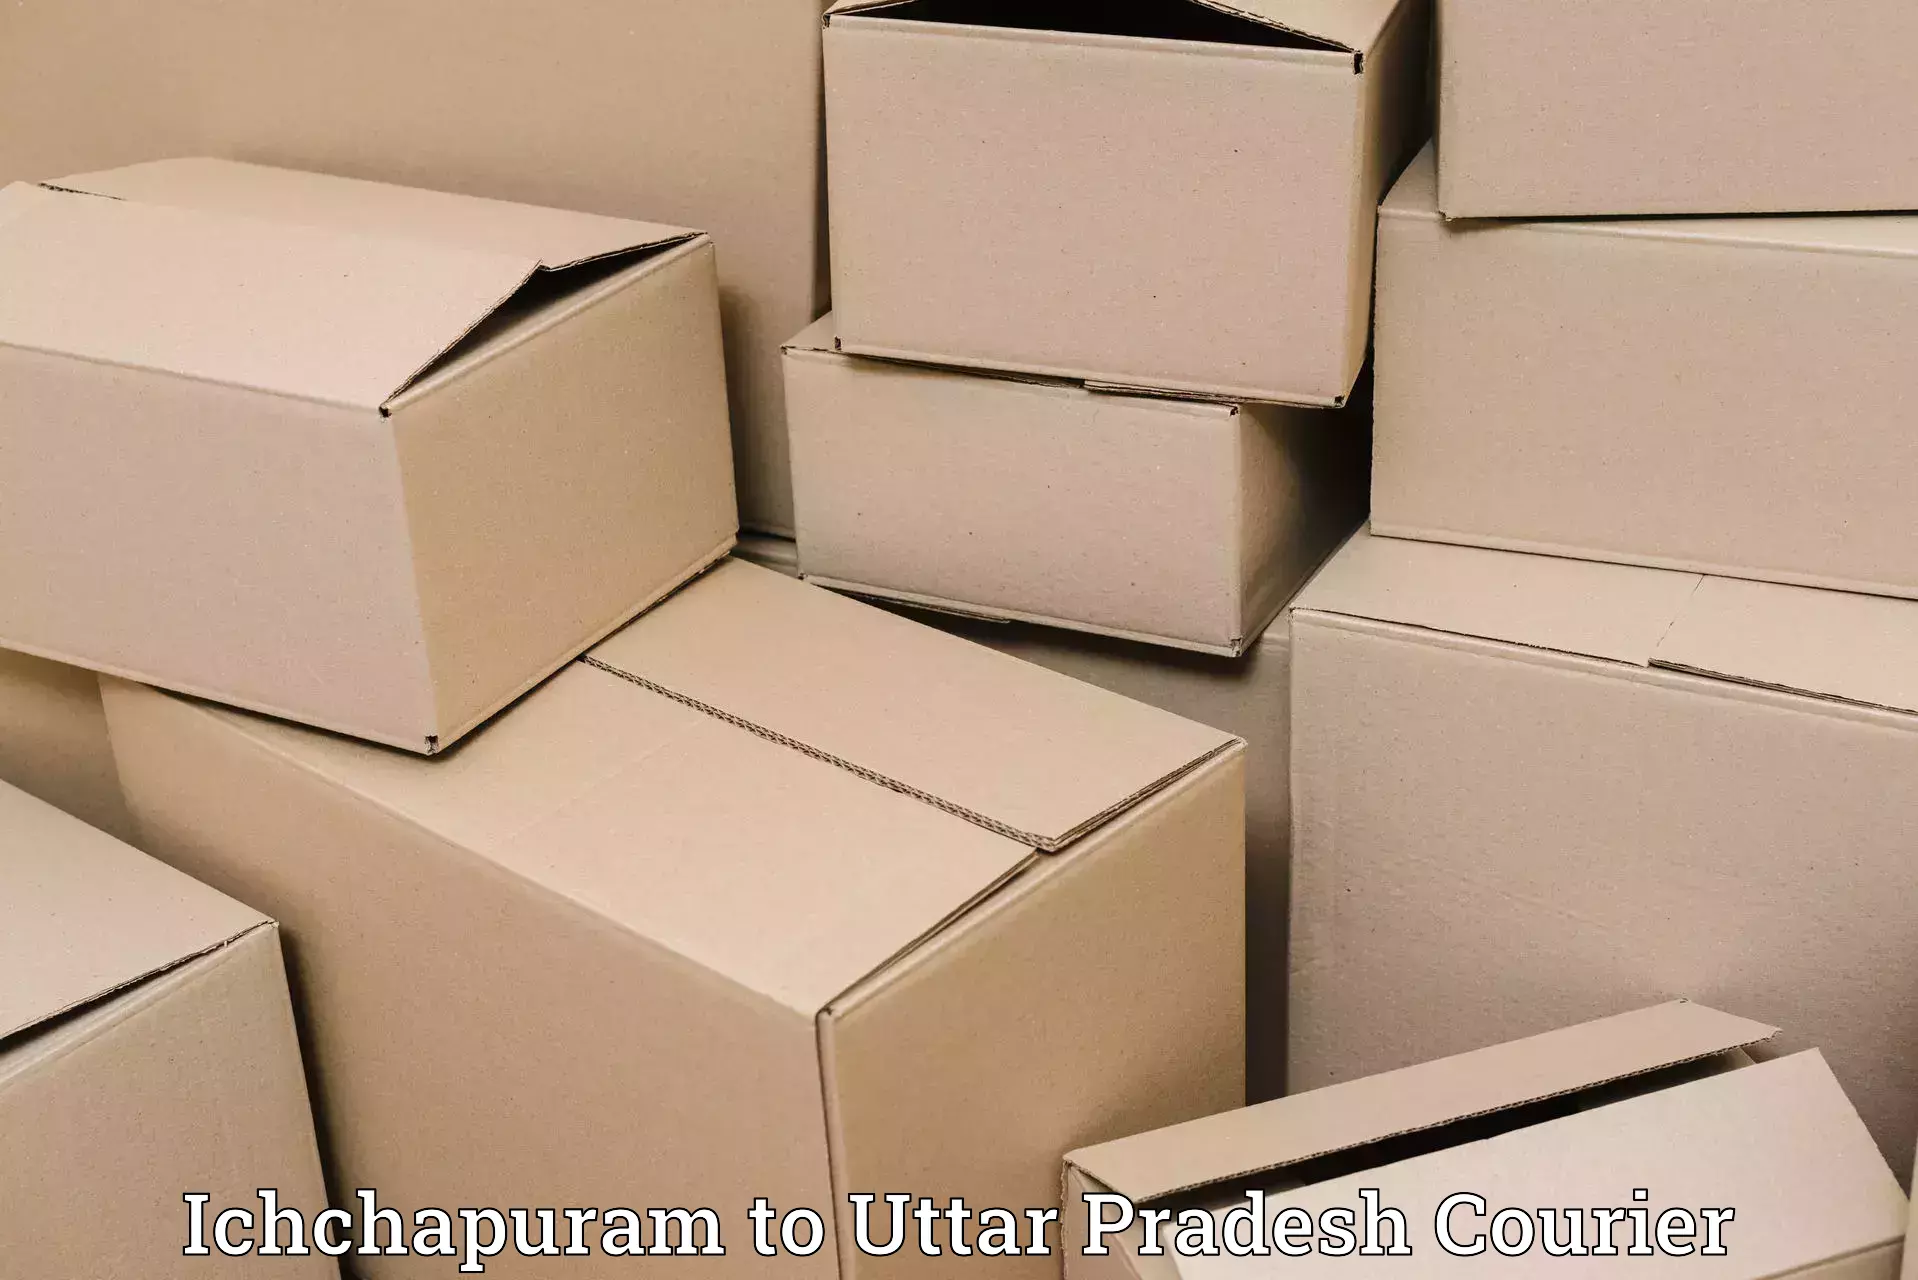 Speedy delivery service Ichchapuram to Hapur